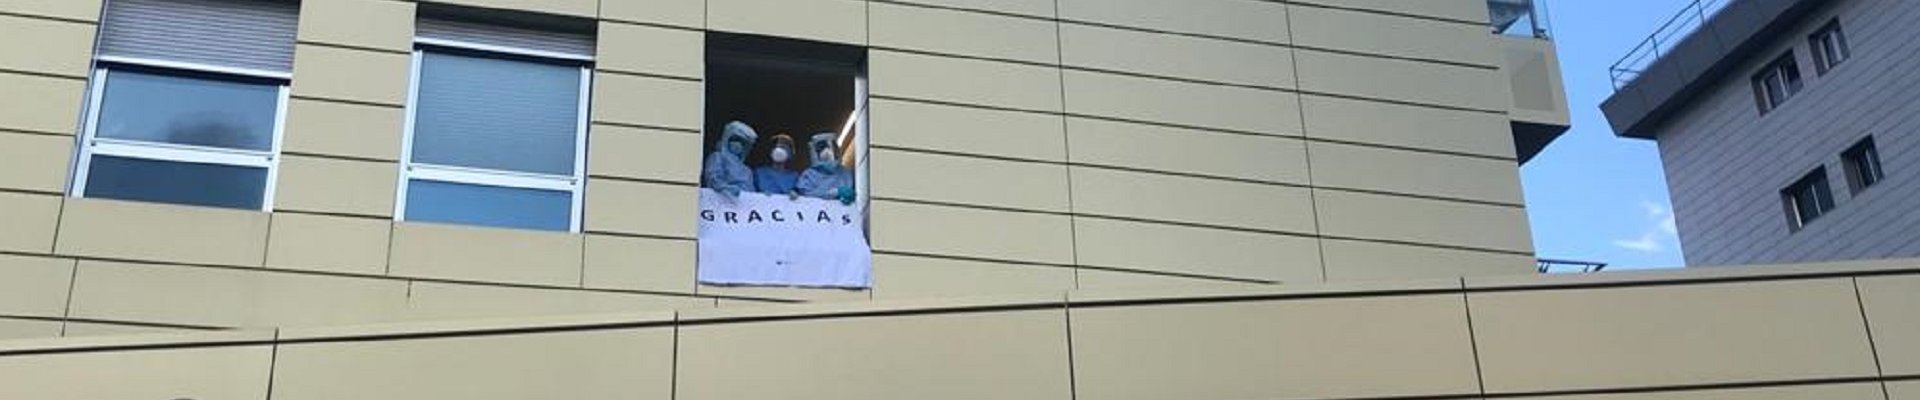 Trabajadores del Hospital Fraternidad-Muprespa Habana sostienen un cartel en el que se lee "Gracias" desde una ventana